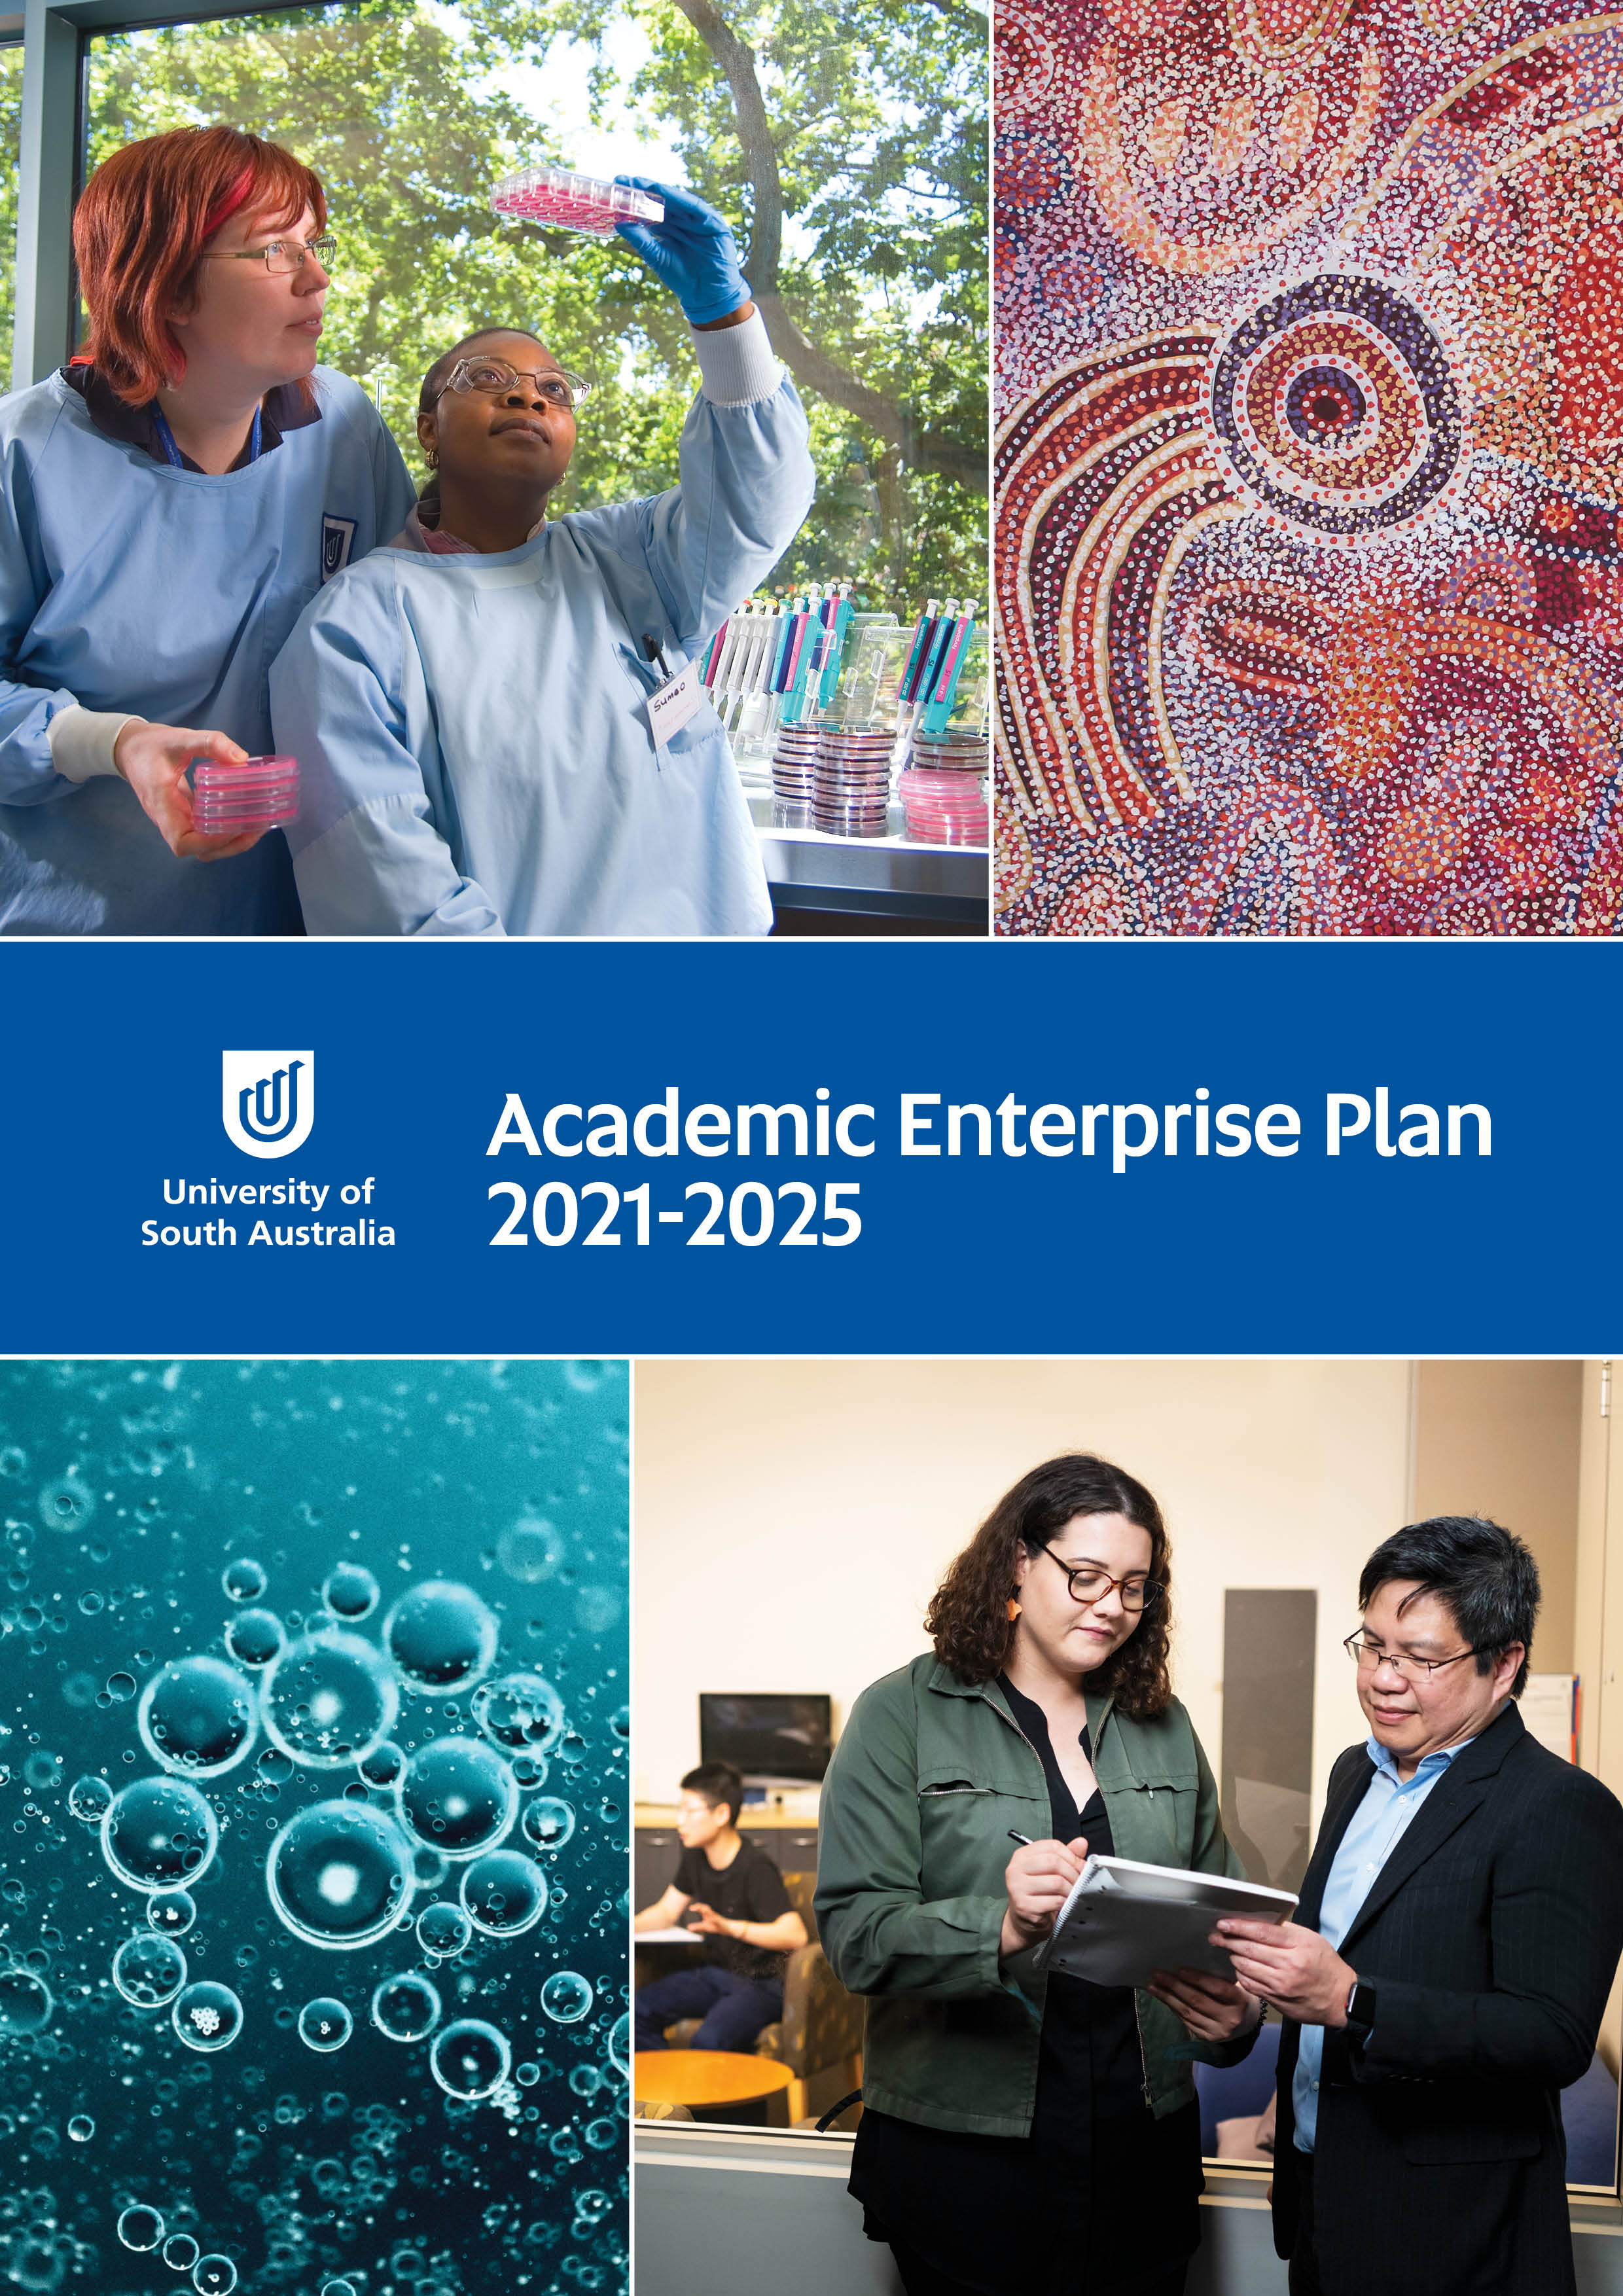 Academic Enterprise Plan brochure front cover